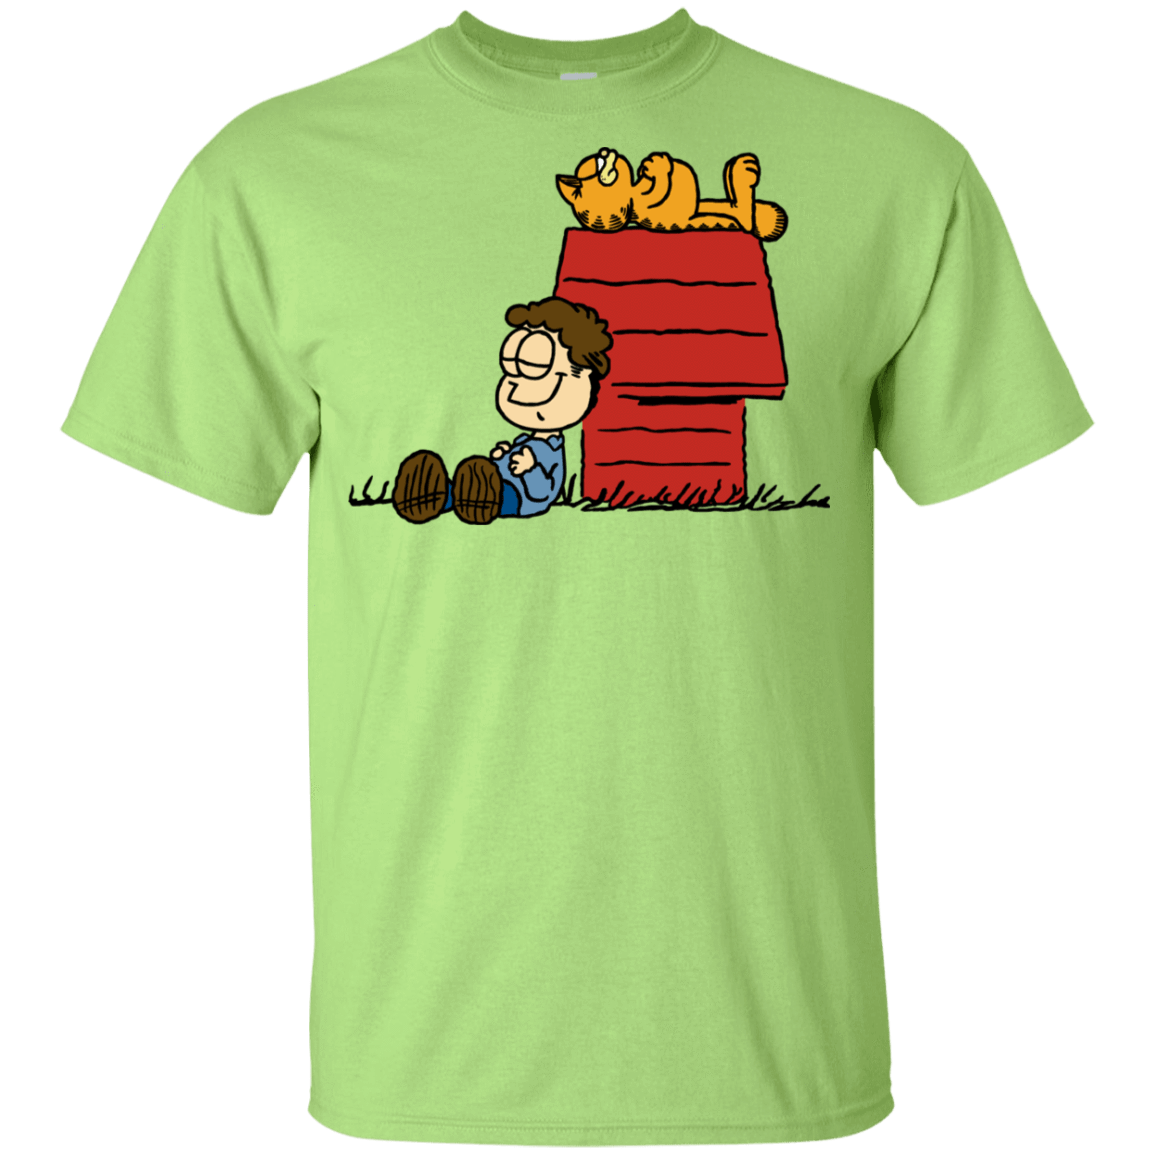 T-Shirts Mint Green / YXS Jon Brown Youth T-Shirt